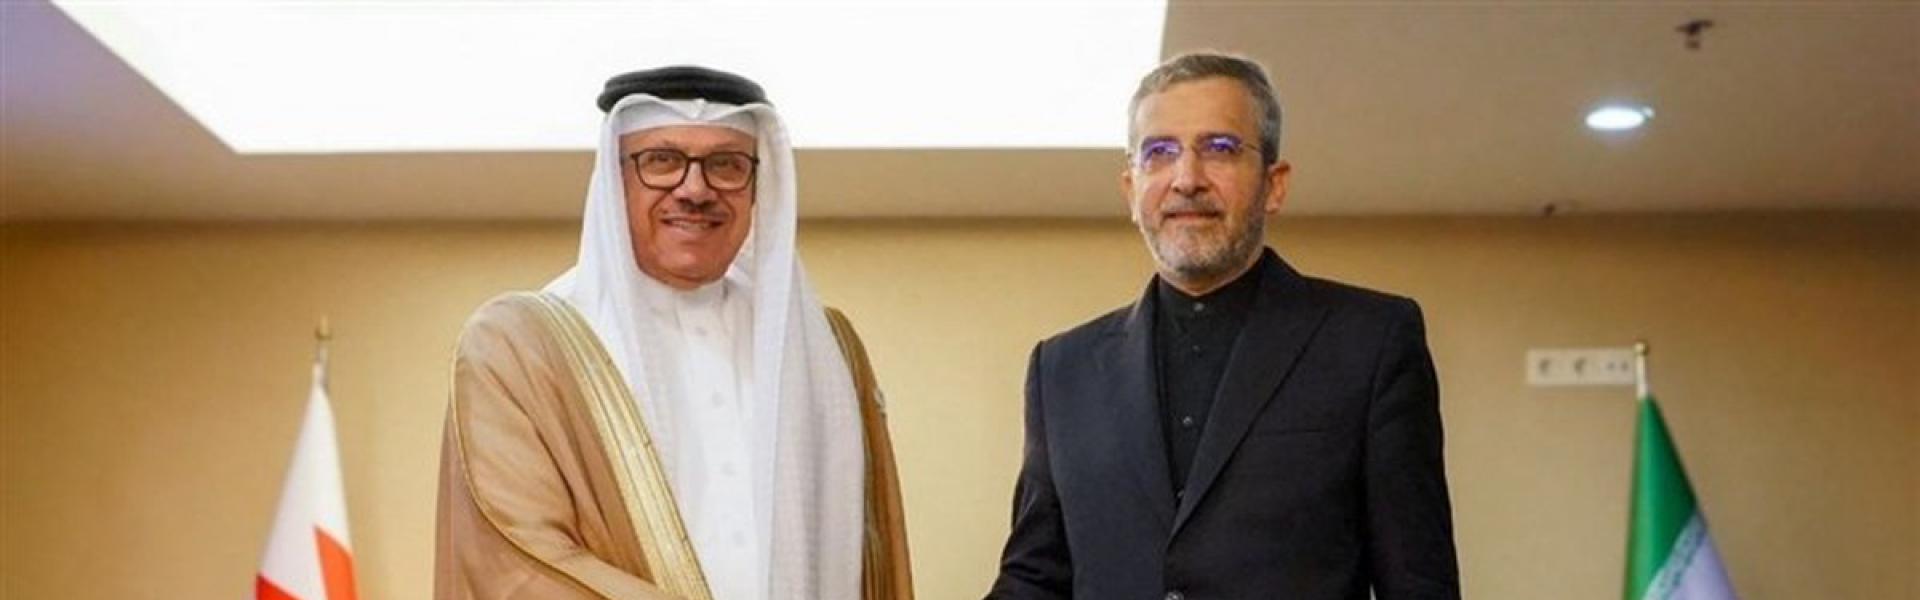 رغبة المنامة بفتح باب الحوار مع طهران على خلفية التقارب السعودي الإيراني